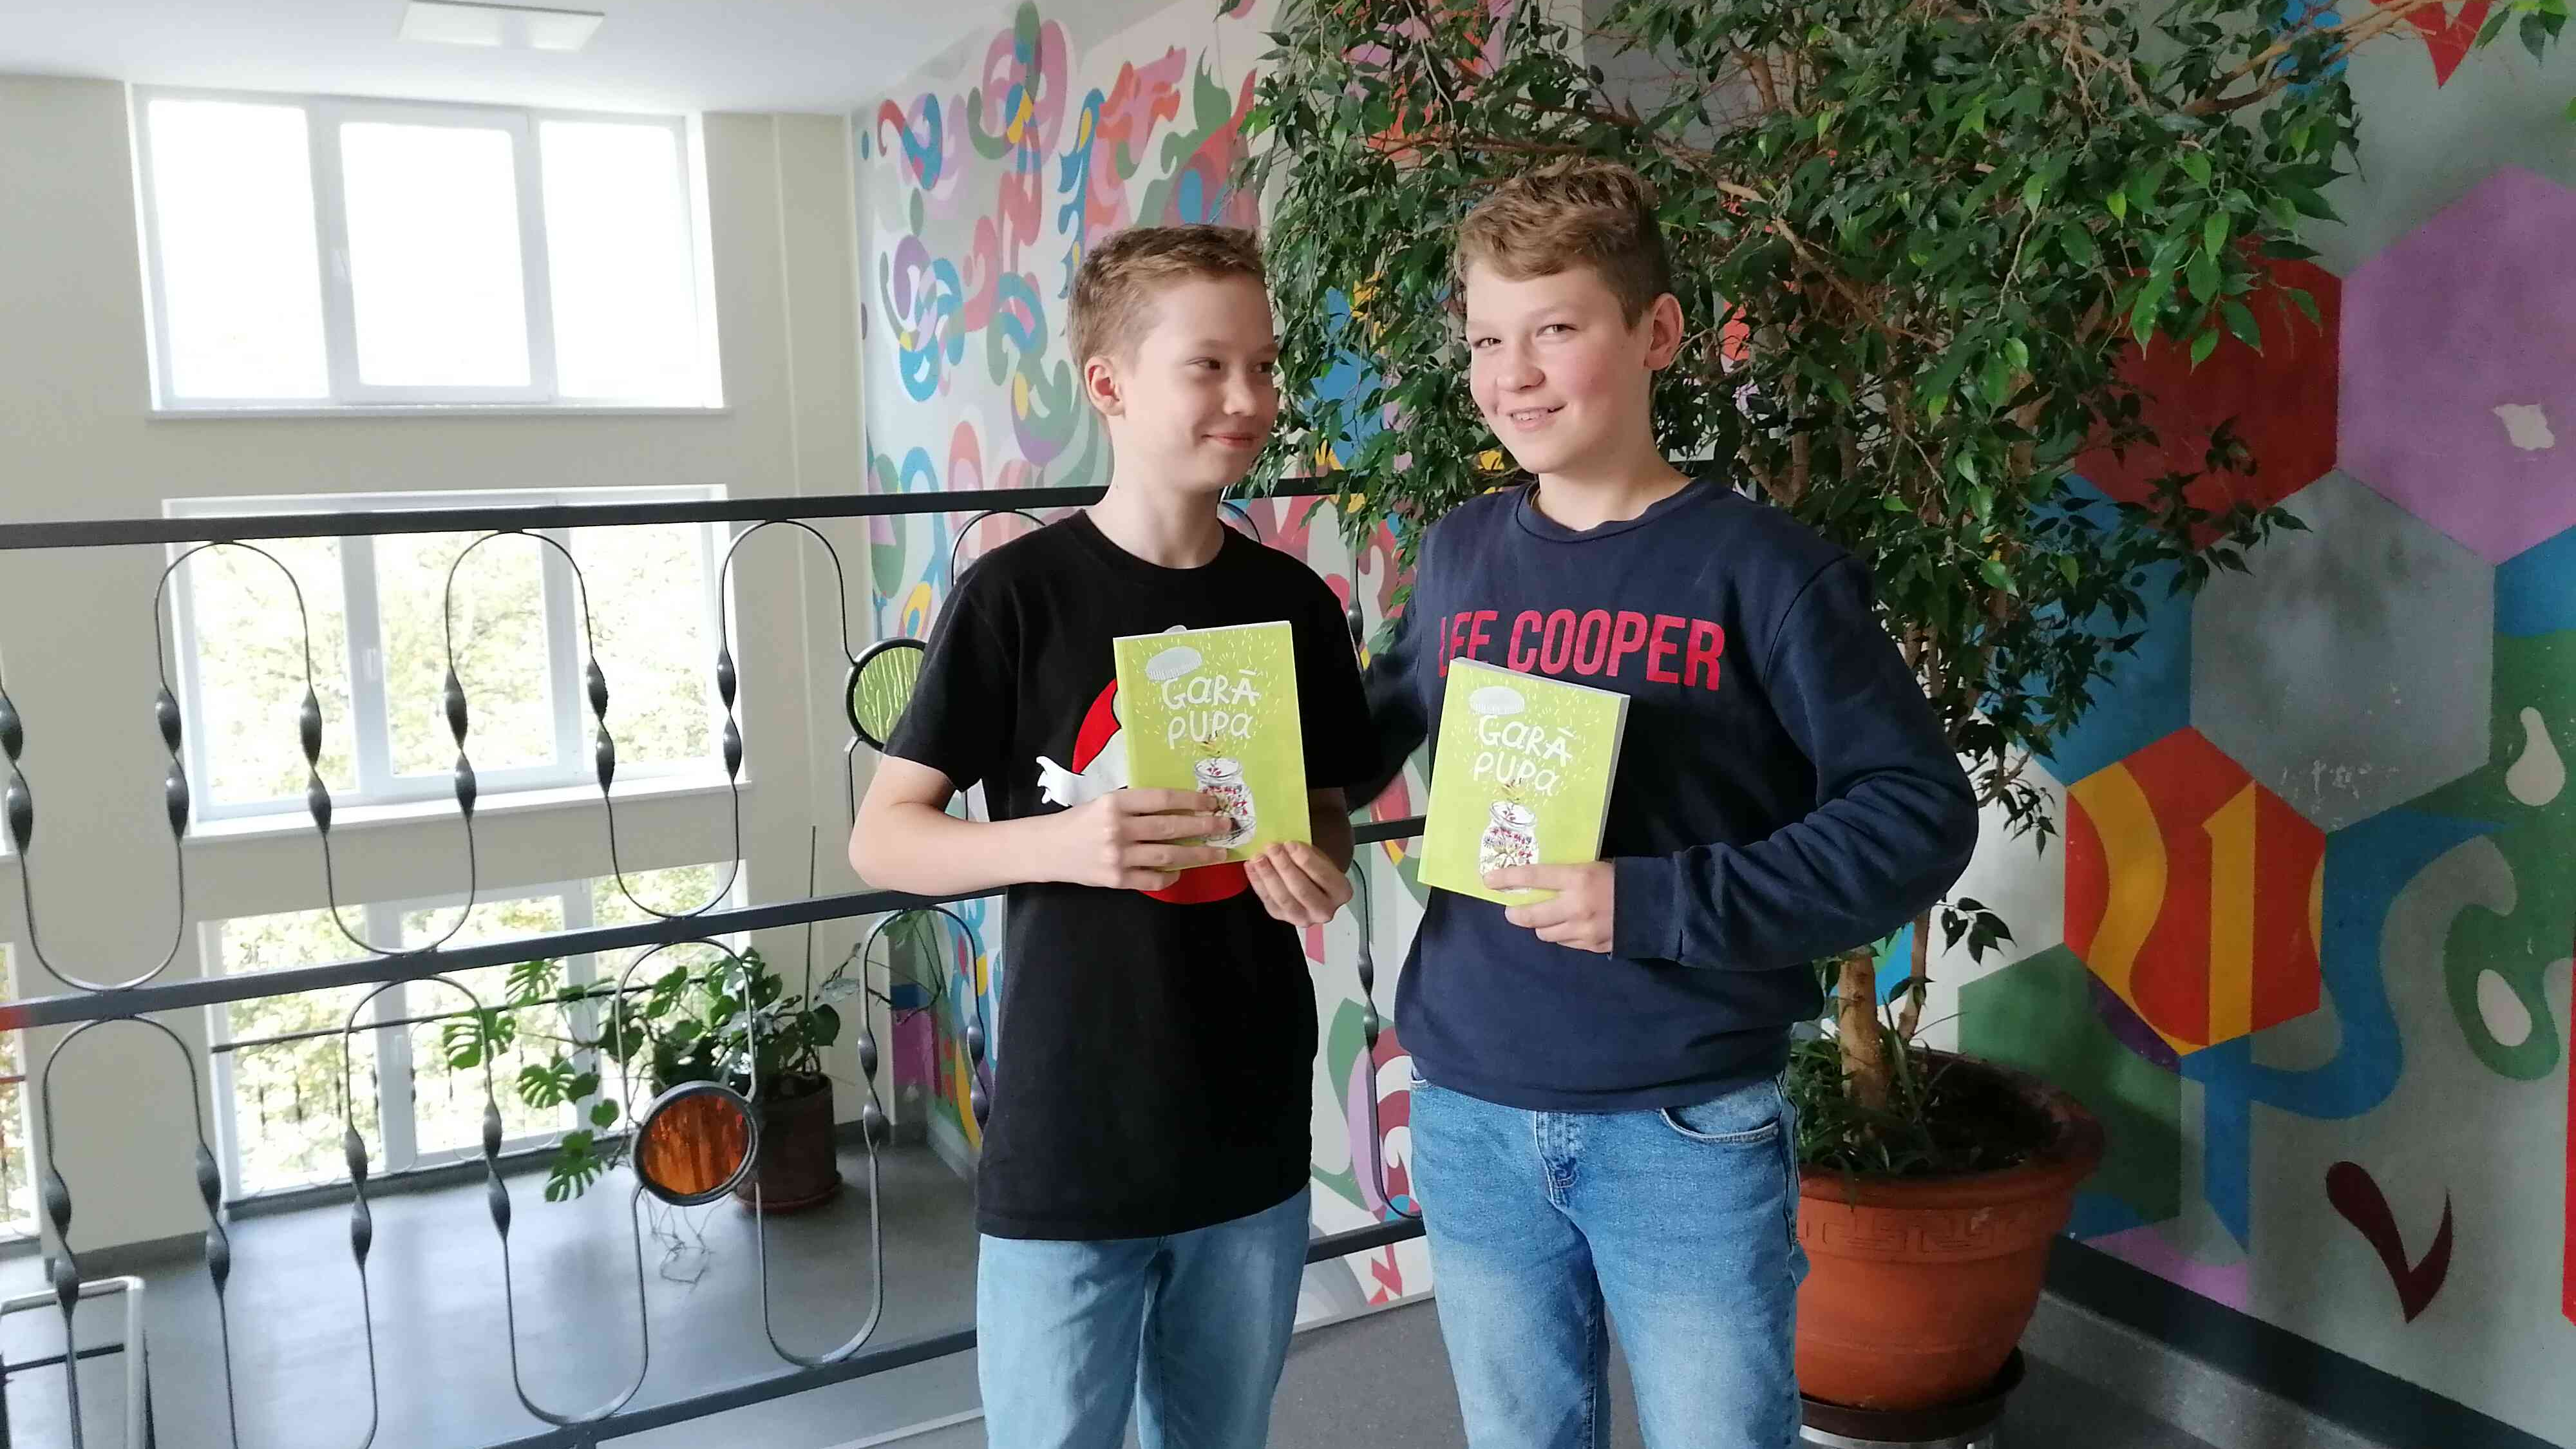  Rīgas Juglas vidusskolas skolēnu publikācijas „Garā pupa 2020”